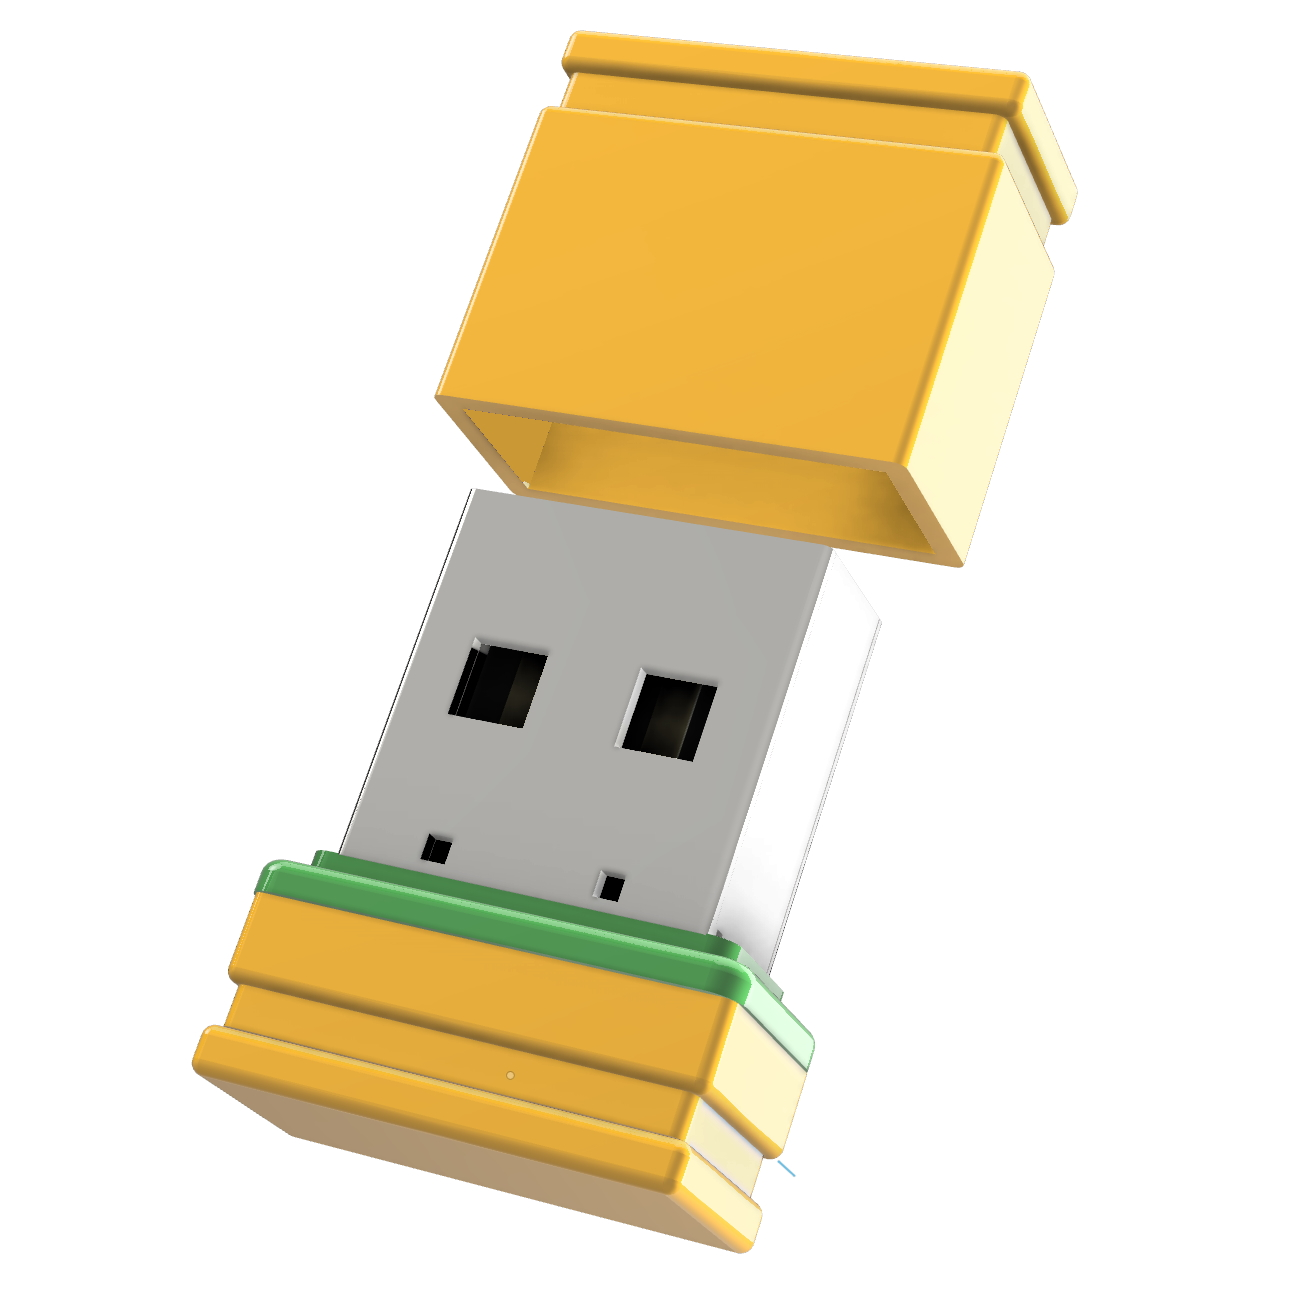 (Gelb/Grün, USB P1 GB) USB-Stick 4 GERMANY ®ULTRA Mini